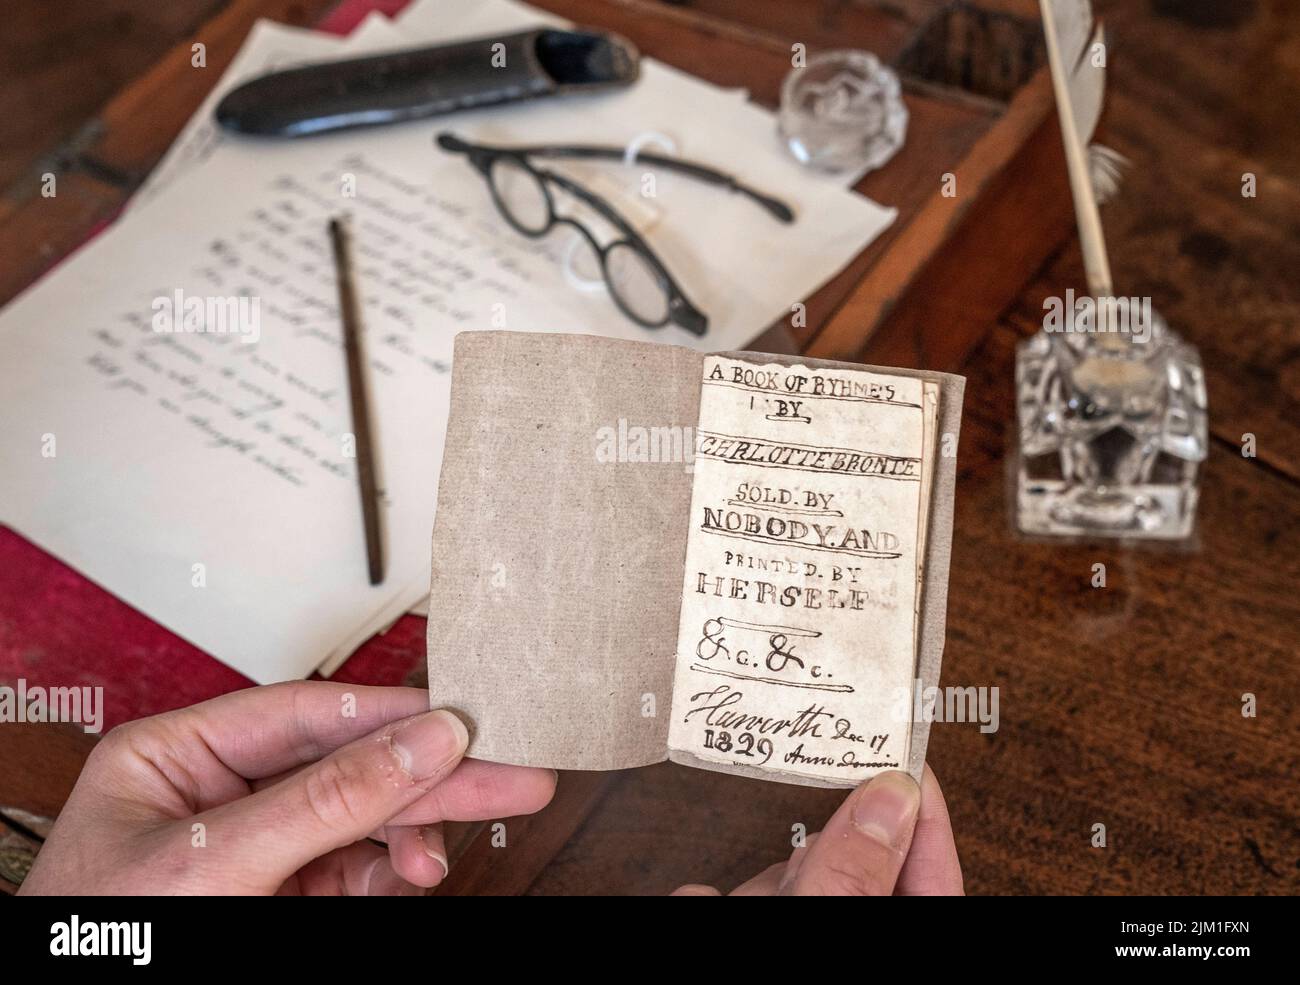 El último libro manuscrito en miniatura de Charlotte Bronte conocido por estar en manos privadas, como el libro va en exhibición después de su regreso al Museo Bronte Parsonage en Haworth, Keighley, West Yorkshire, una vez el hogar de la familia Bronte. Fecha de la foto: Jueves 4 de agosto de 2022. Foto de stock